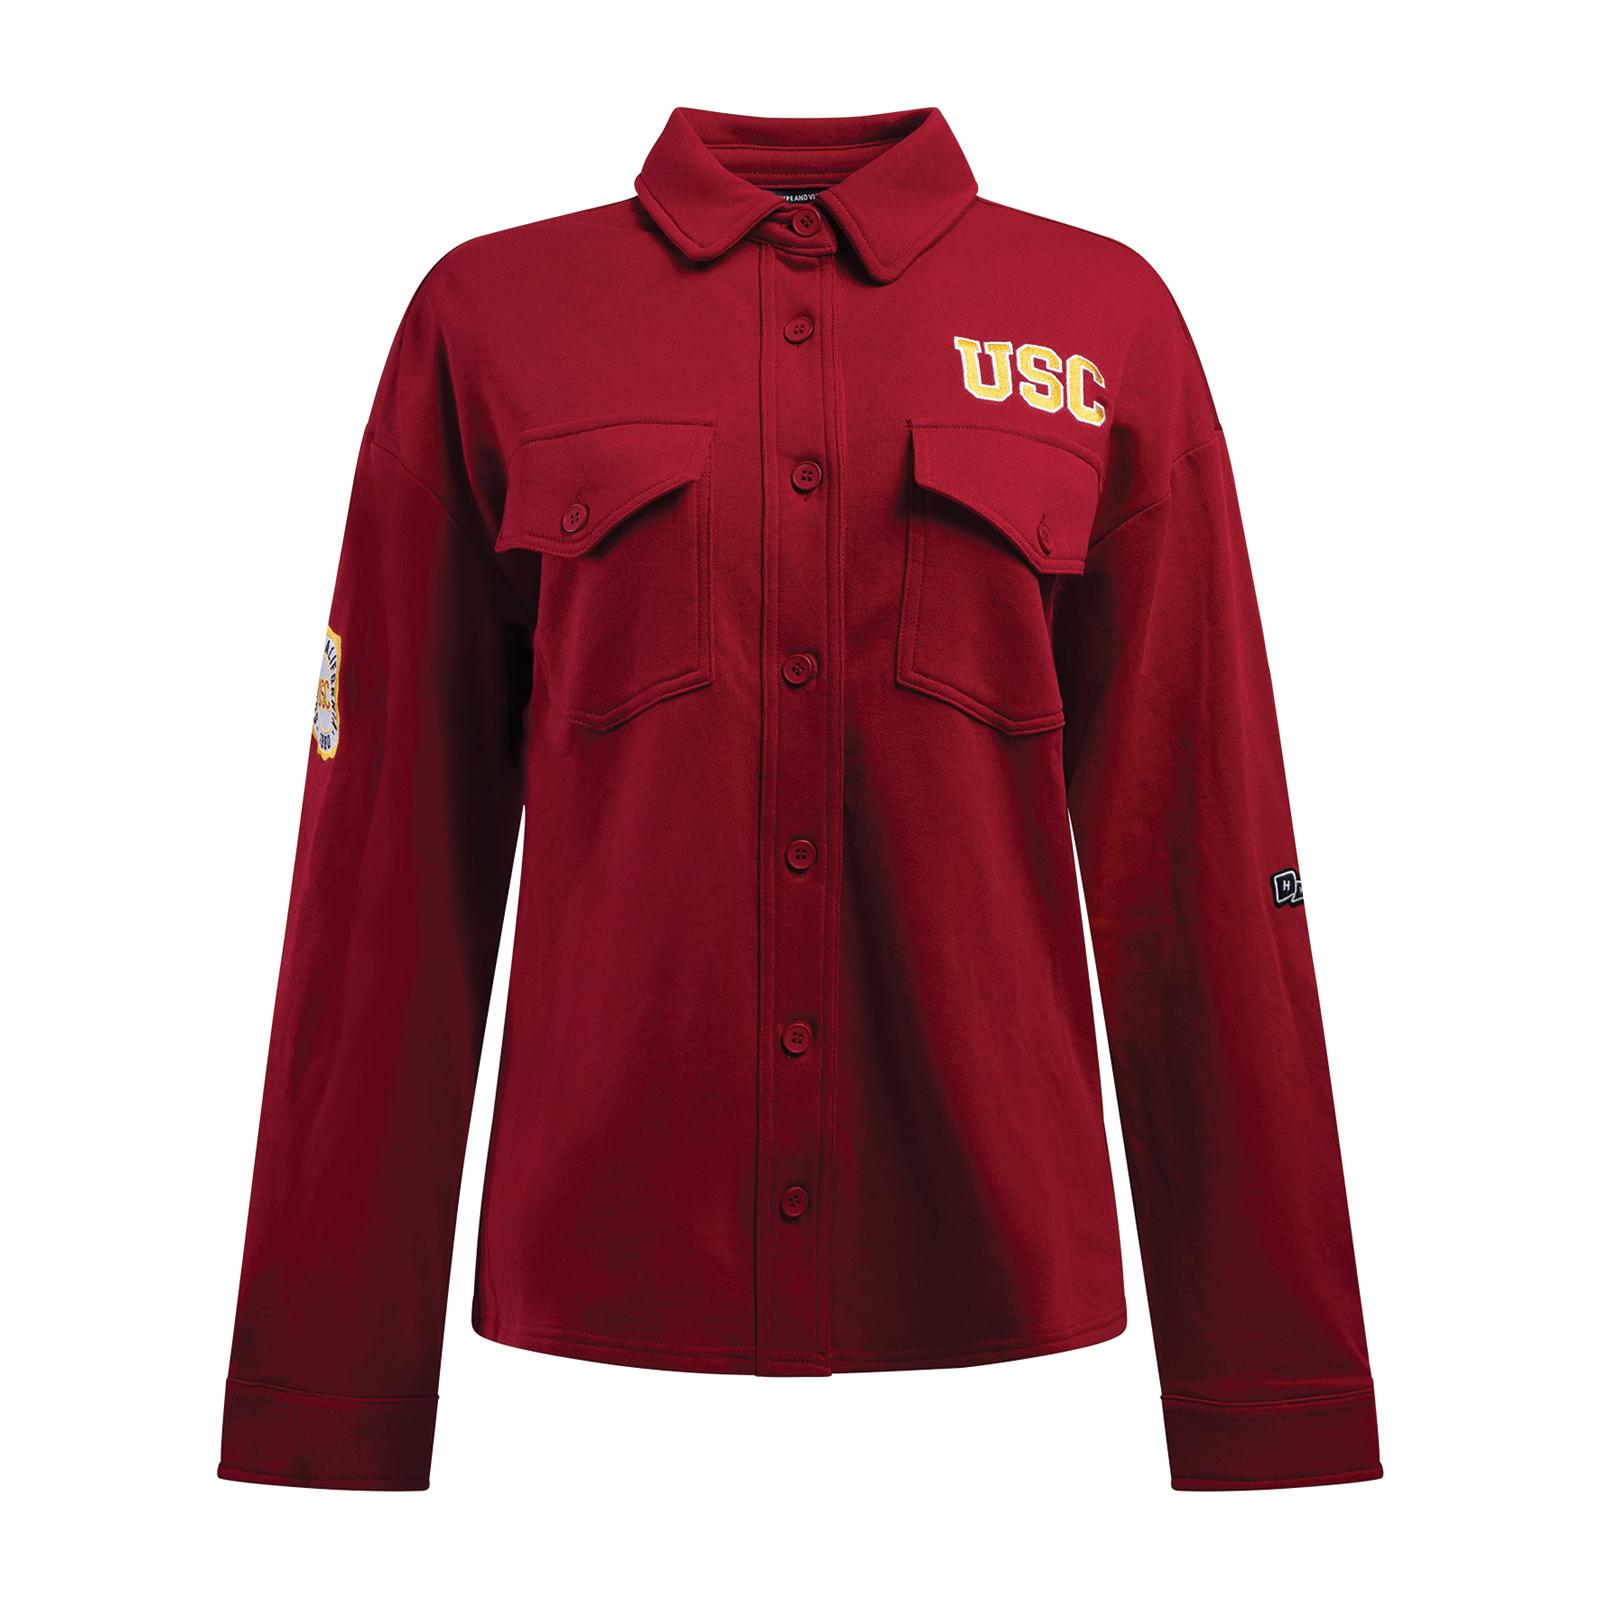 USC Womens MBA Shirt Jacket image01